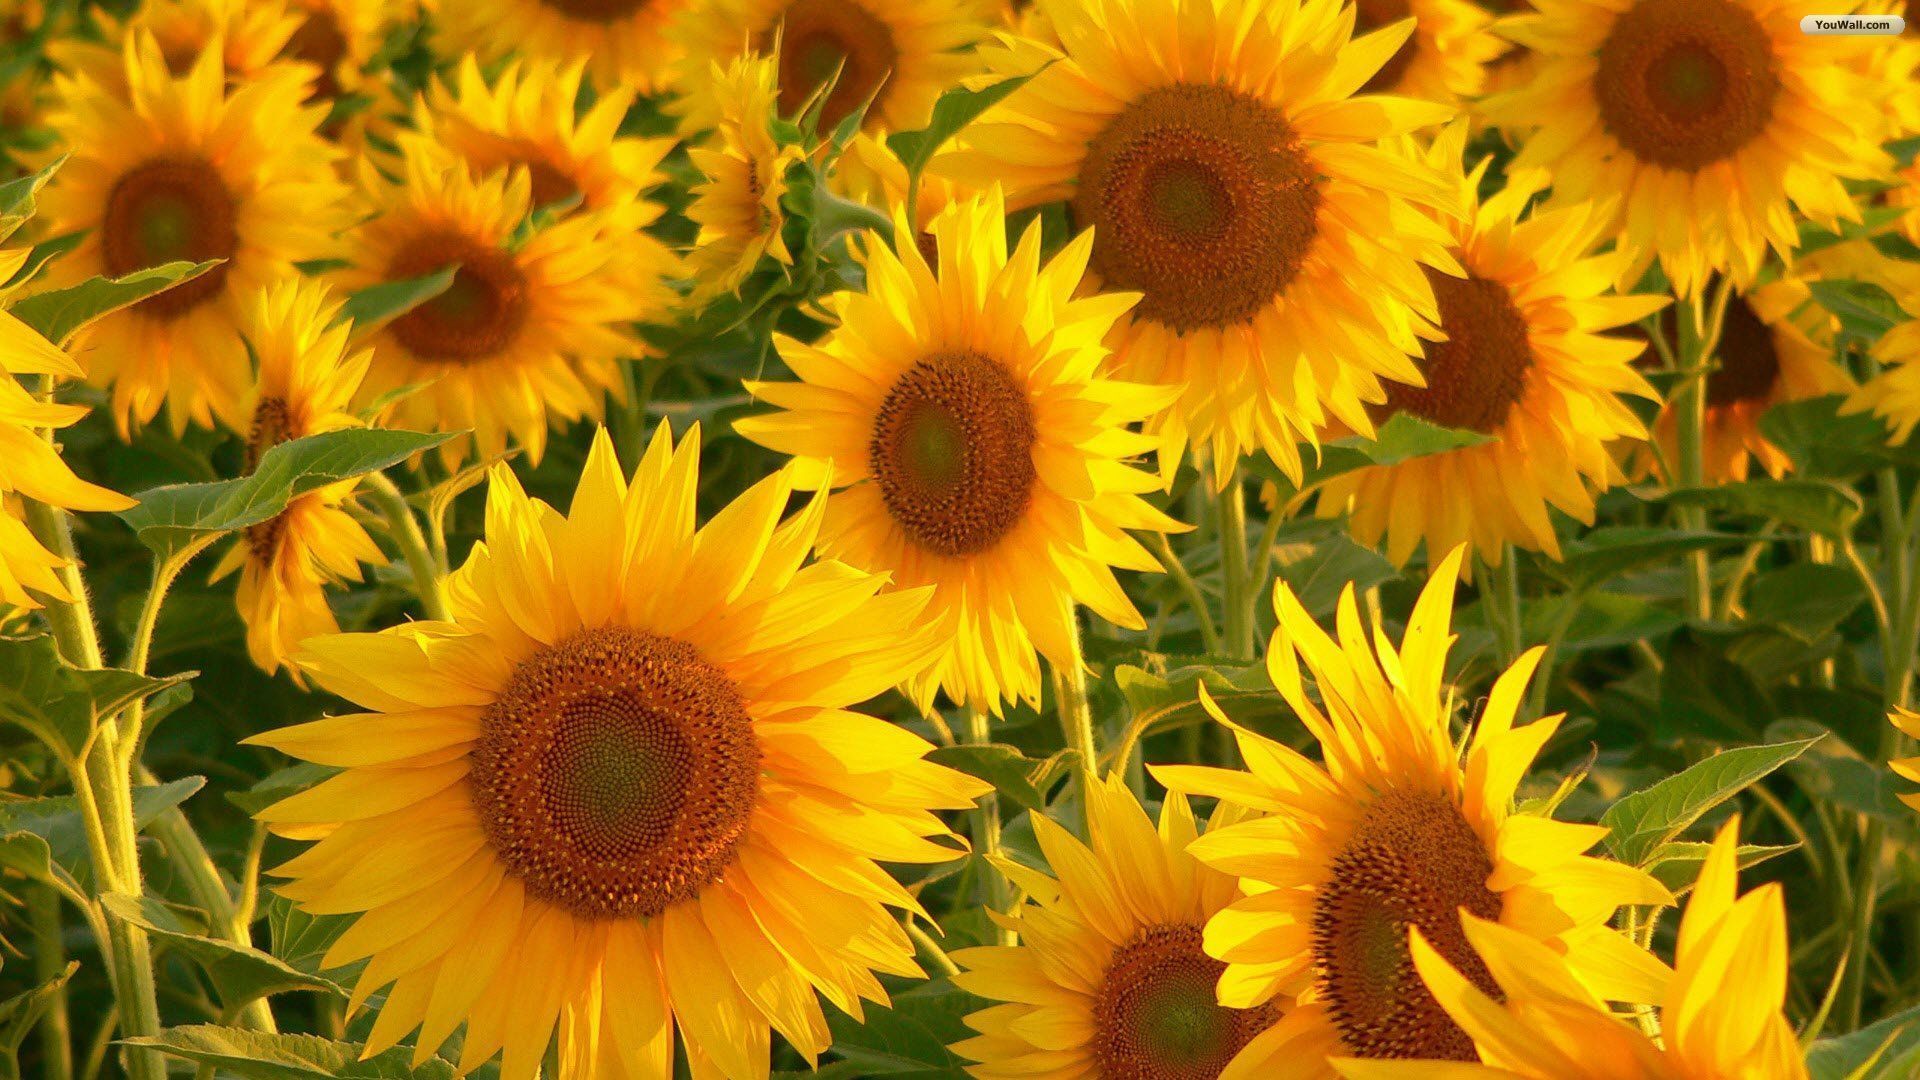 YouWall - Stunning Sunflowers Wallpaper - wallpaper,wallpapers ...